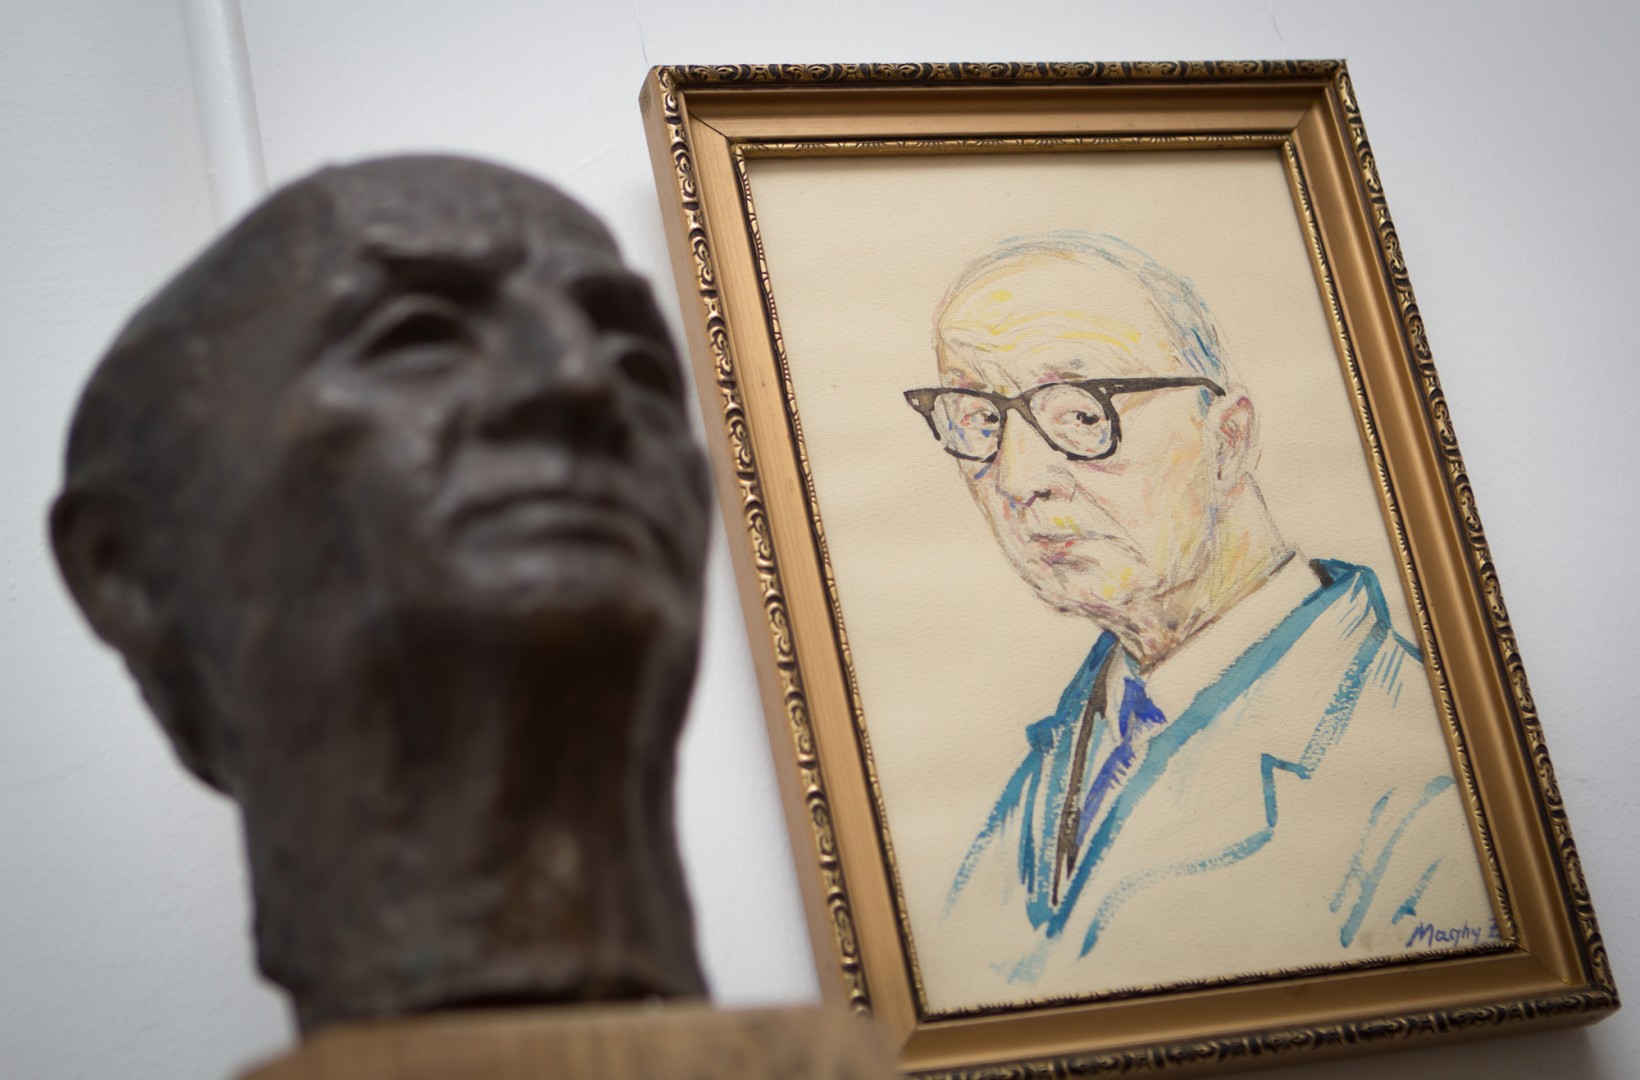 Maghy Zoltán festőművész születésének 120. évfordulója alkalmából kiállítás nyílik a Sillye Gábor Művelődési Központ és Közösségi Ház Hajdúsági galériájában, január 27-én 16 órakor.